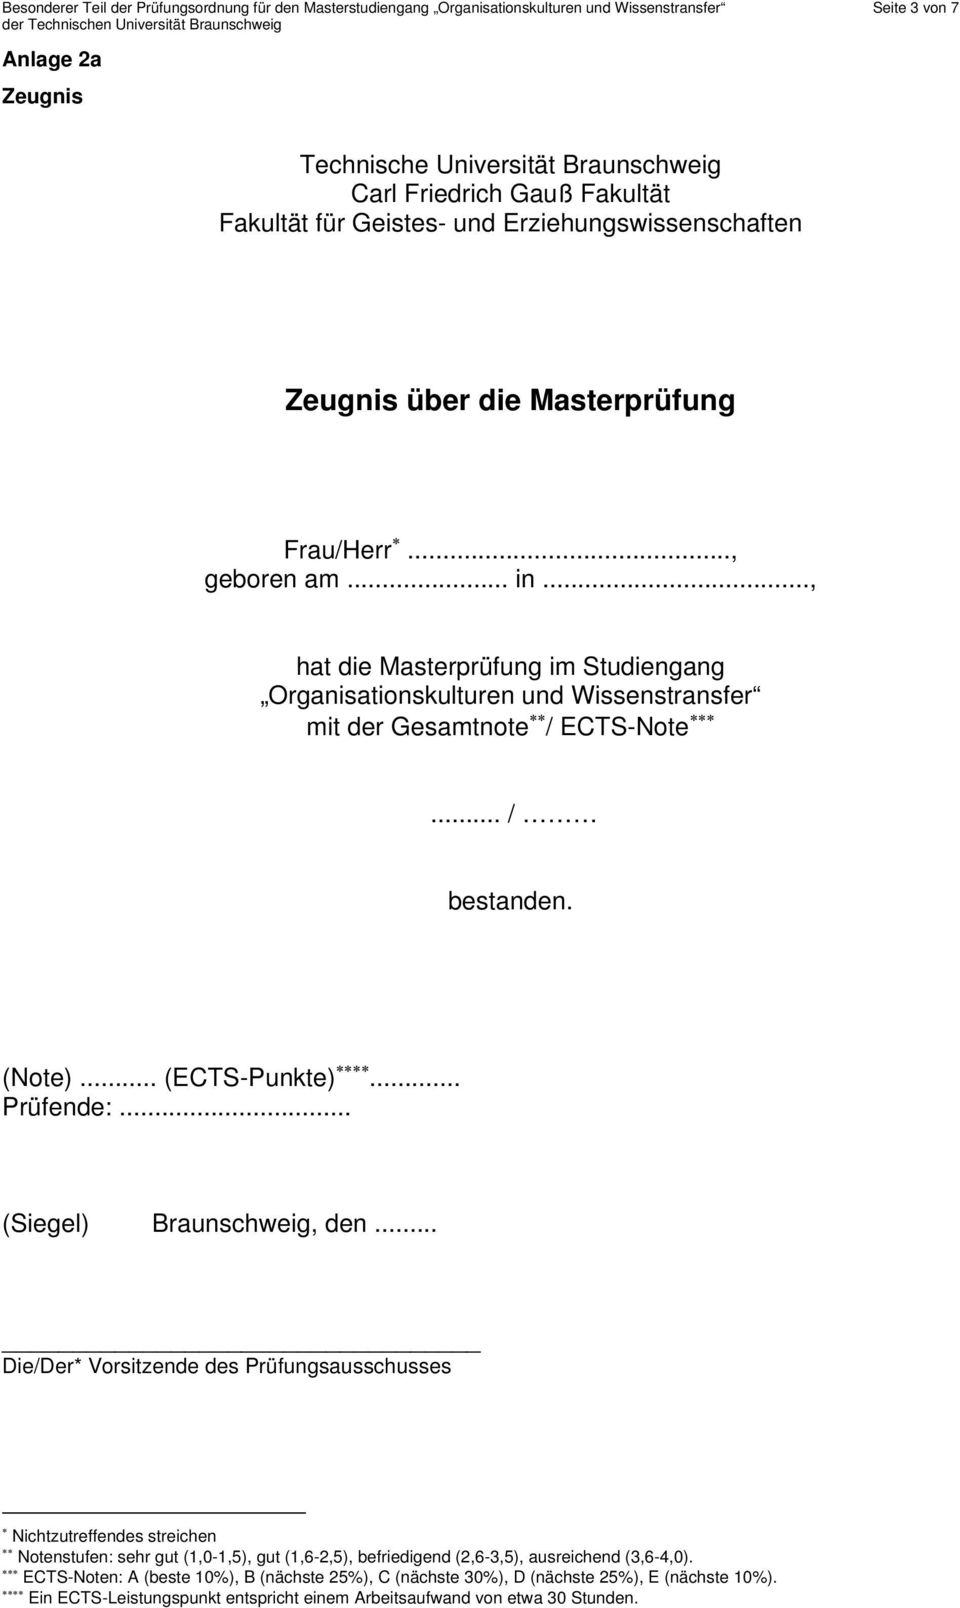 .., hat die Masterprüfung im Studiengang Organisationskulturen und Wissenstransfer mit der Gesamtnote / ECTS-Note... / bestanden. (Note)... (ECTS-Punkte)... Prüfende:... (Siegel) Braunschweig, den.